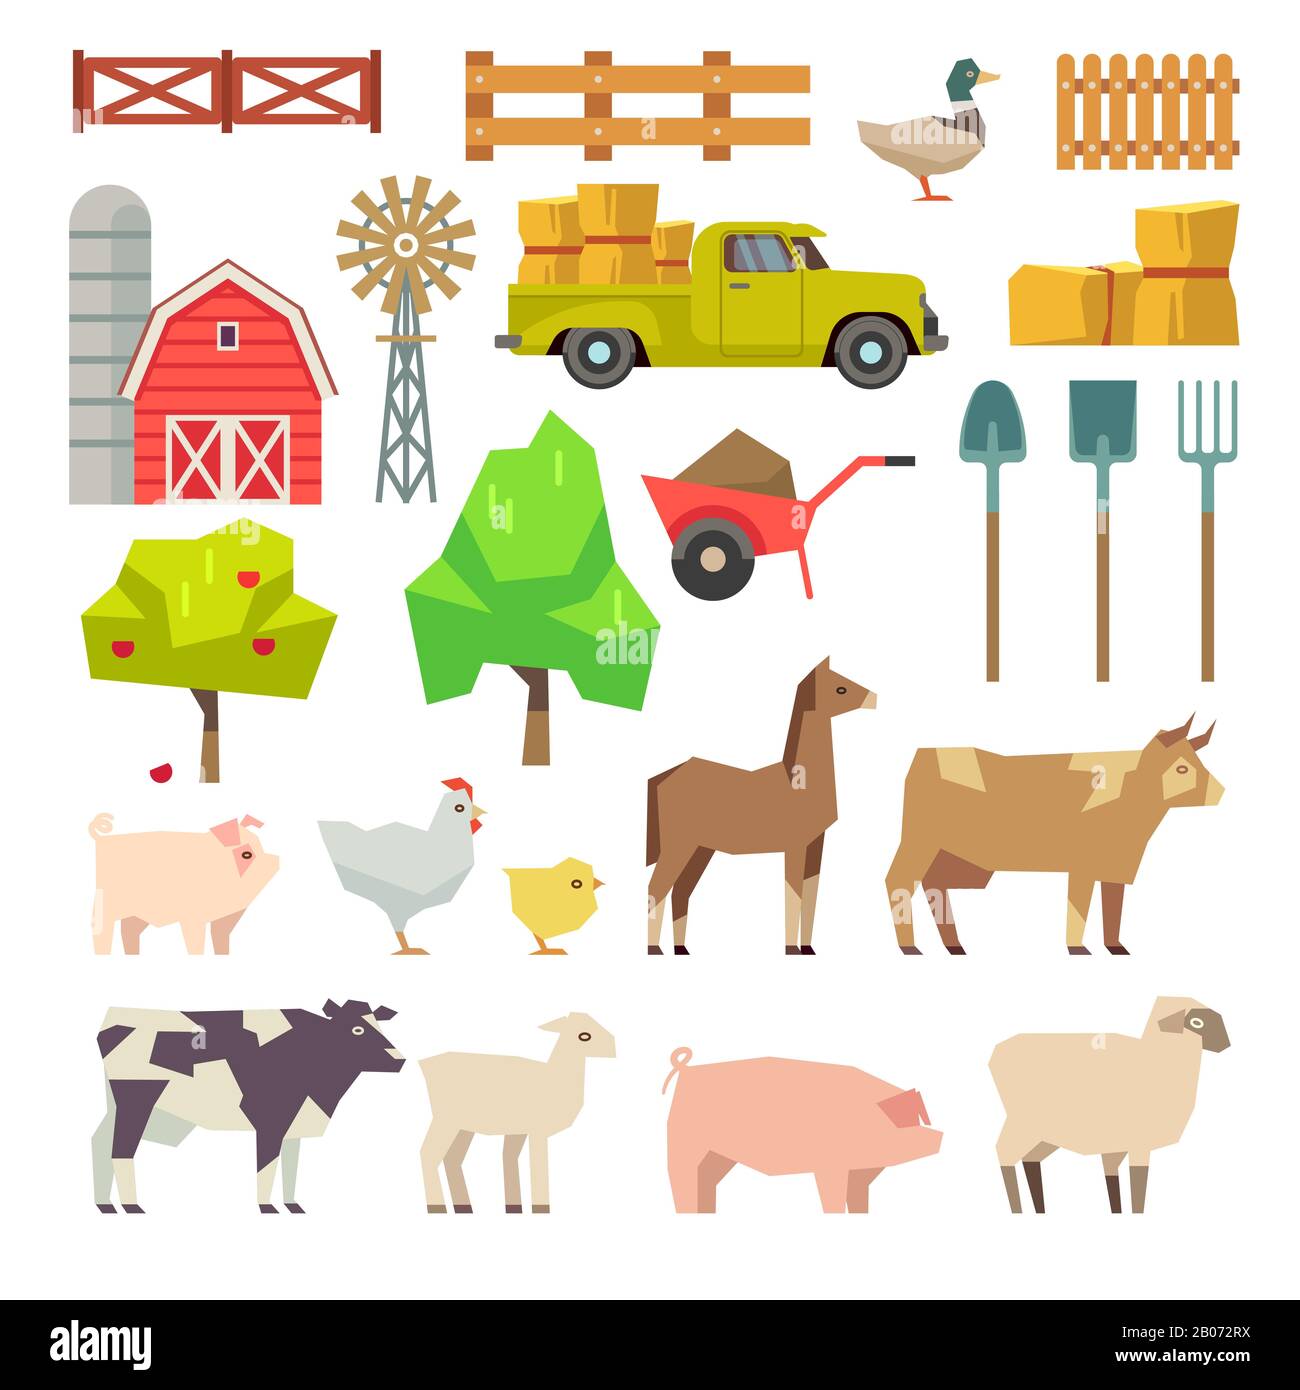 Cartoon-Farm-Elemente, Tiere und Werkzeuge, Bäume und Landmaschinen. Obst und Windmühle, Bauernbauillustration Stock Vektor